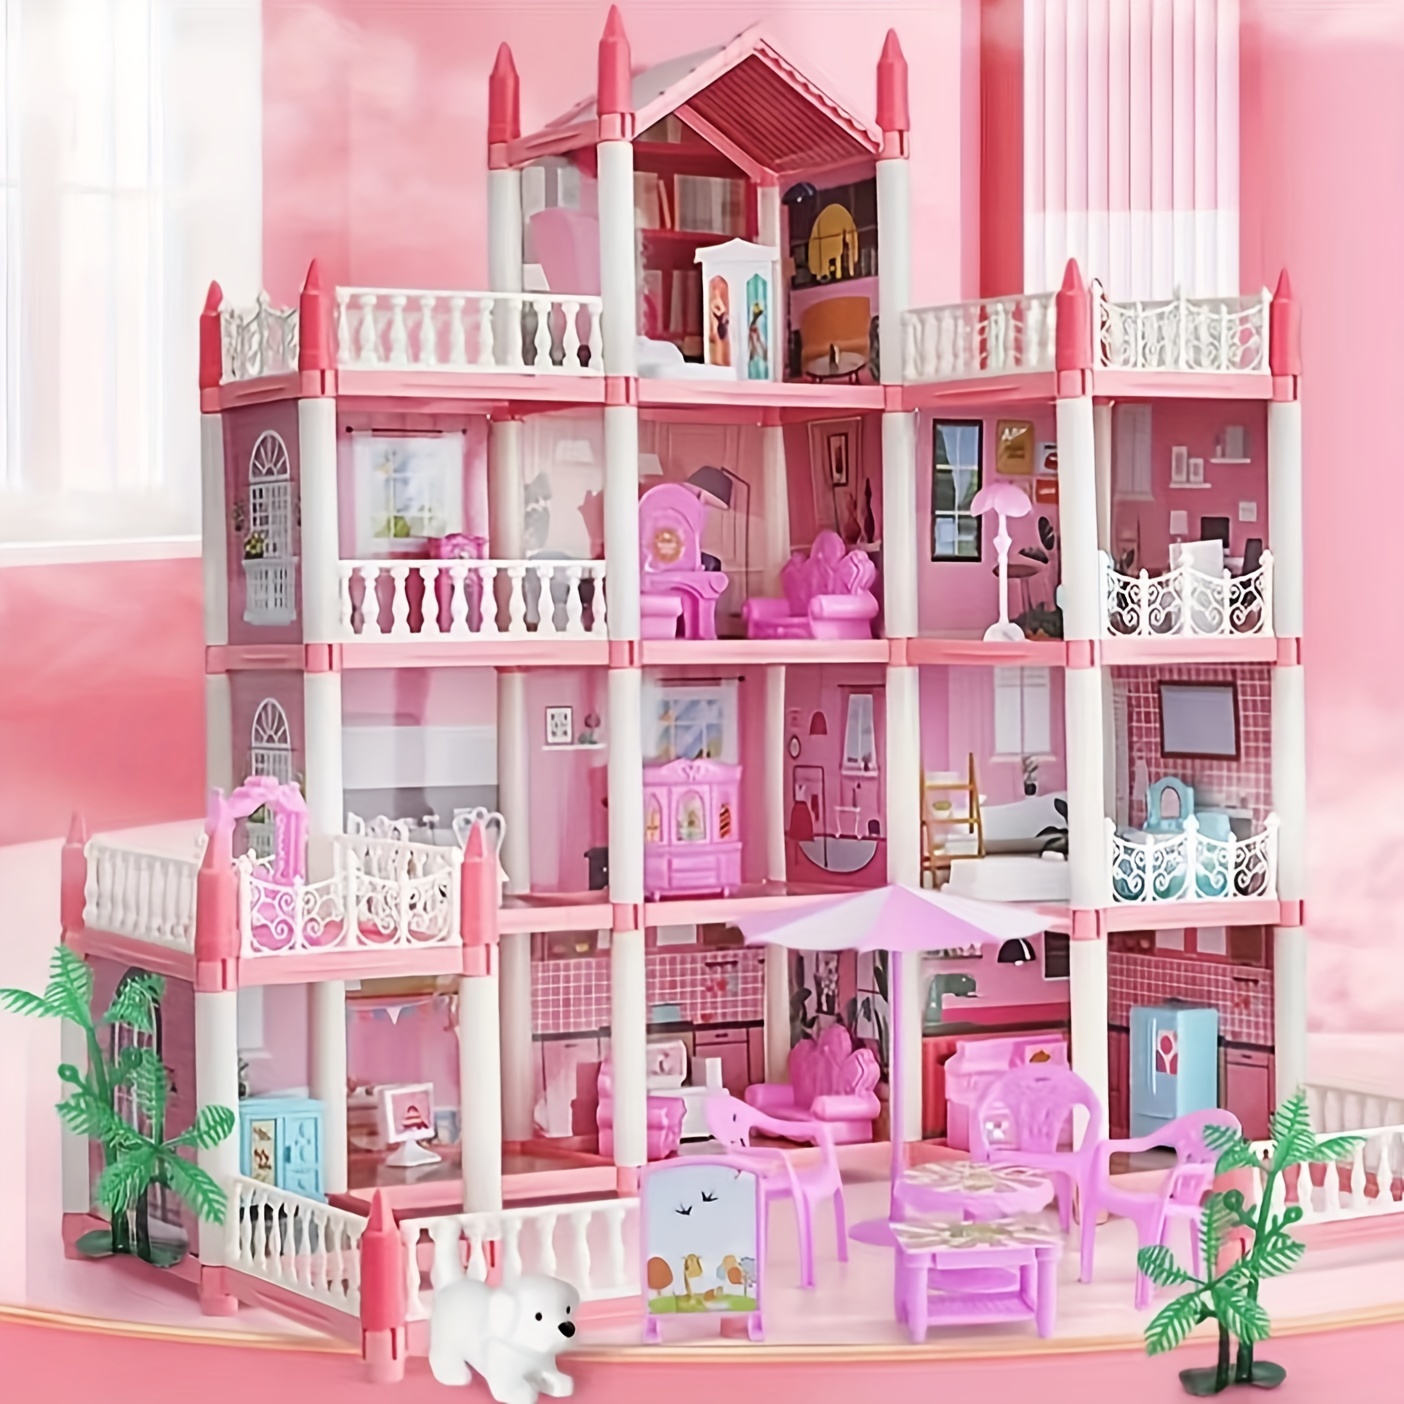 Free 2PCS dolls + Fairy Lights] SALE Big Dollhouse Multiple Floors